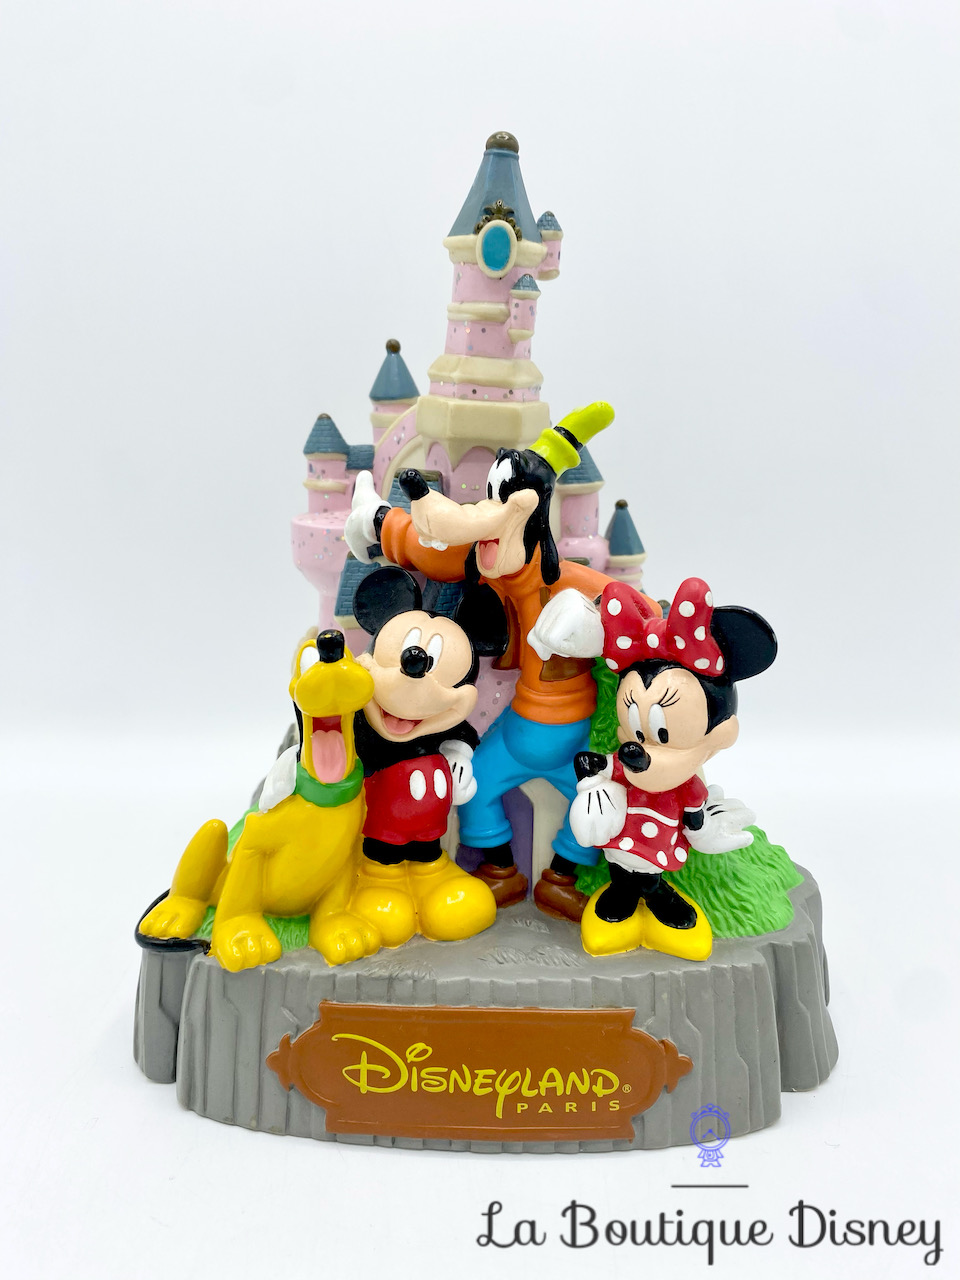 Tirelire Château Disneyland Paris Mickey Minnie Dingo Pluto Disney plastique 21 cm